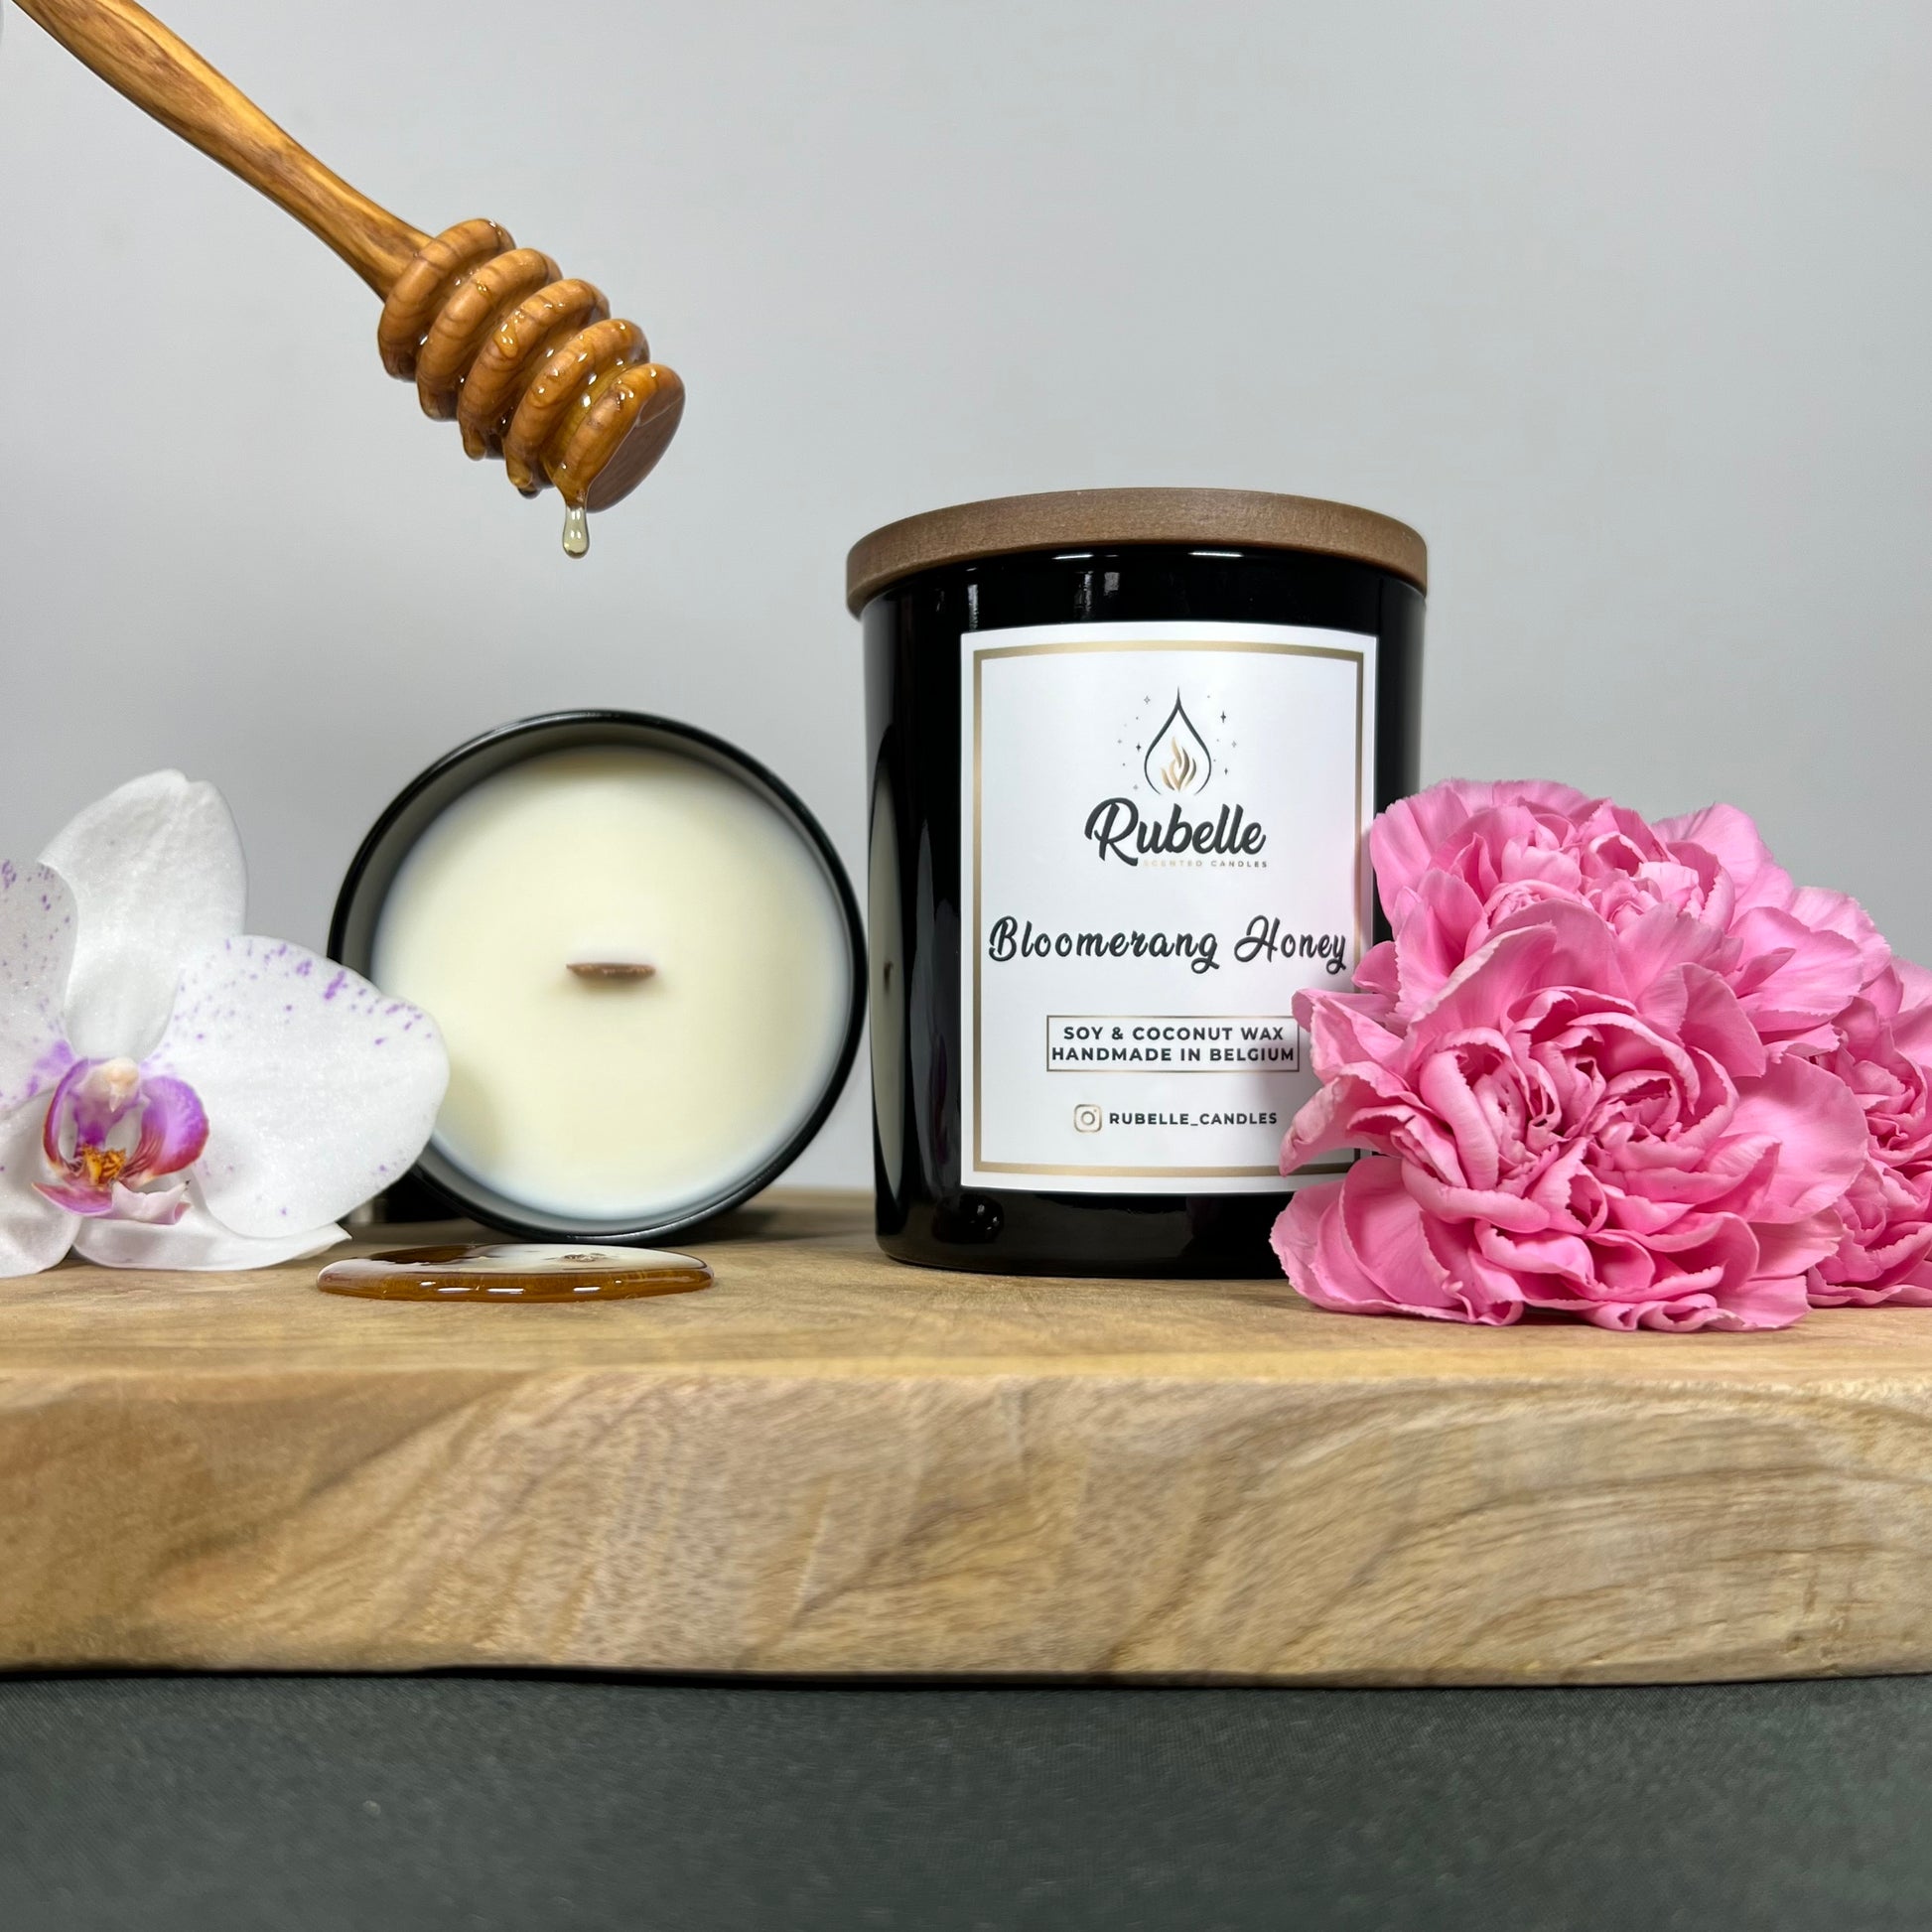 Rubelle Geurkaars: Bloomerang Honey, bloemig & zoet honing aroma met katoenen of houten lont.